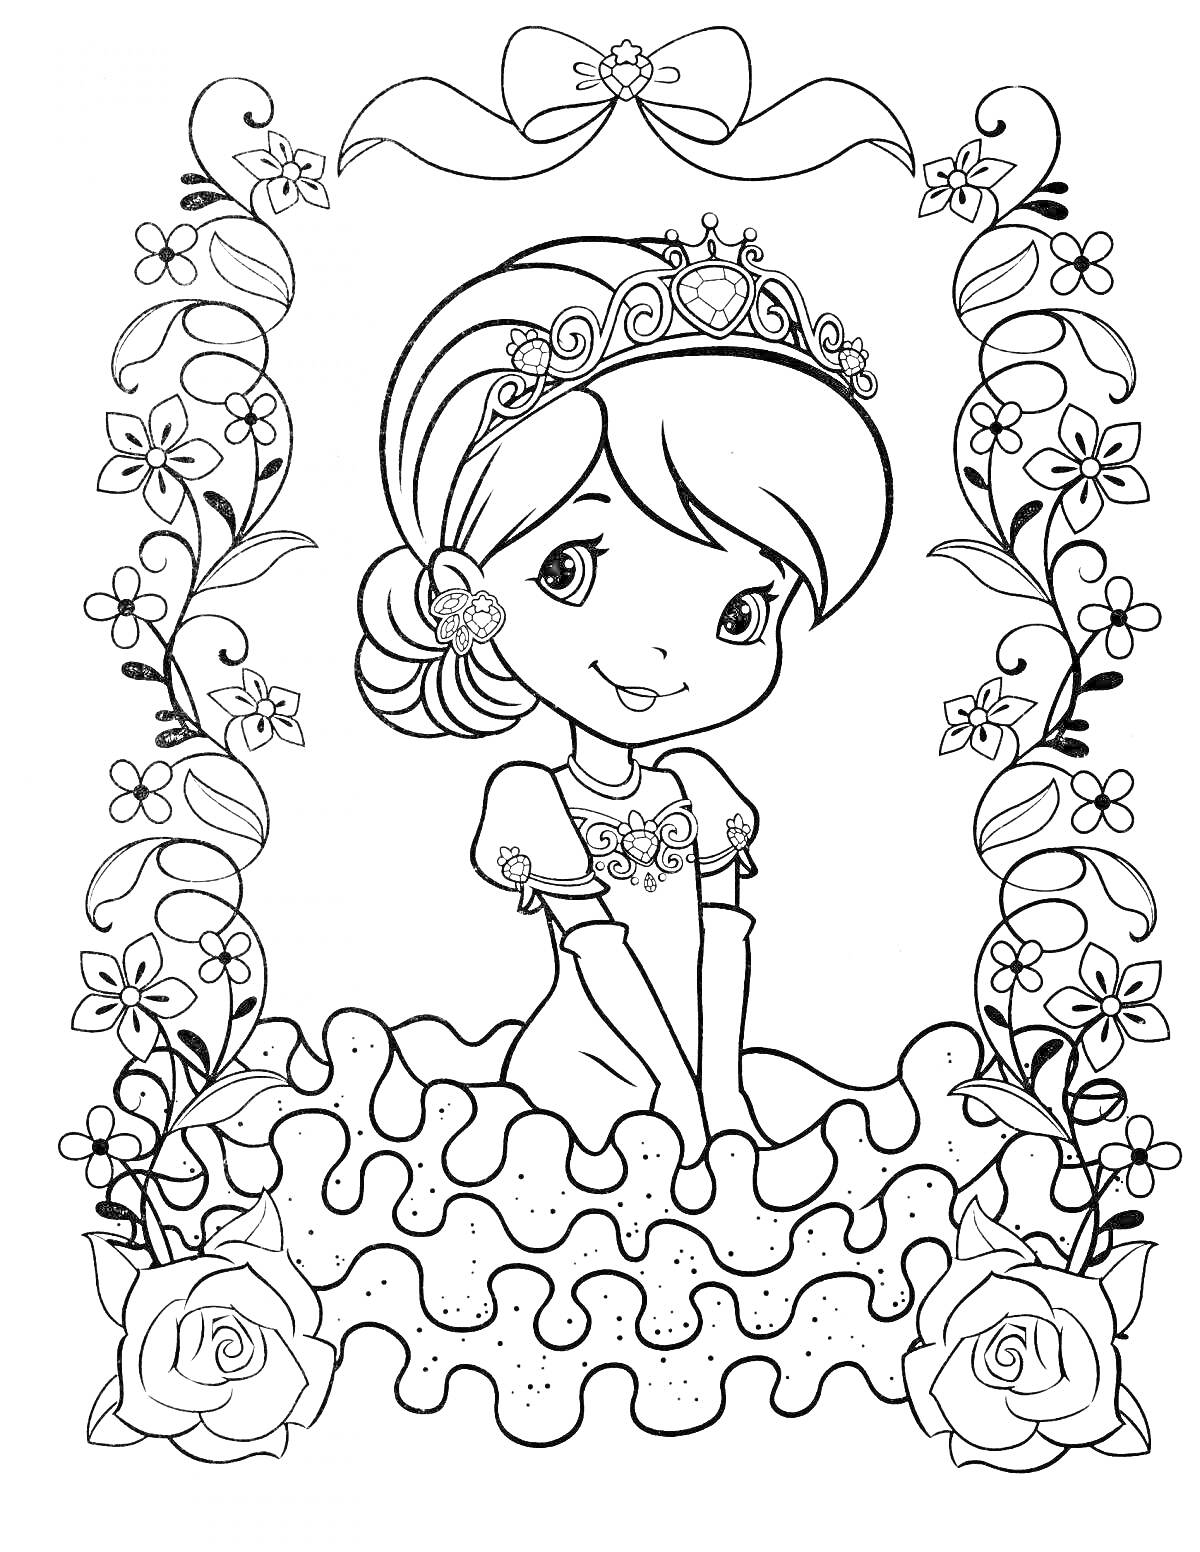 Раскраска Принцесса в короне с ободком в цветах и пышном платье, окружённая цветами и листьями, с декоративным бантом вверху и розами по бокам